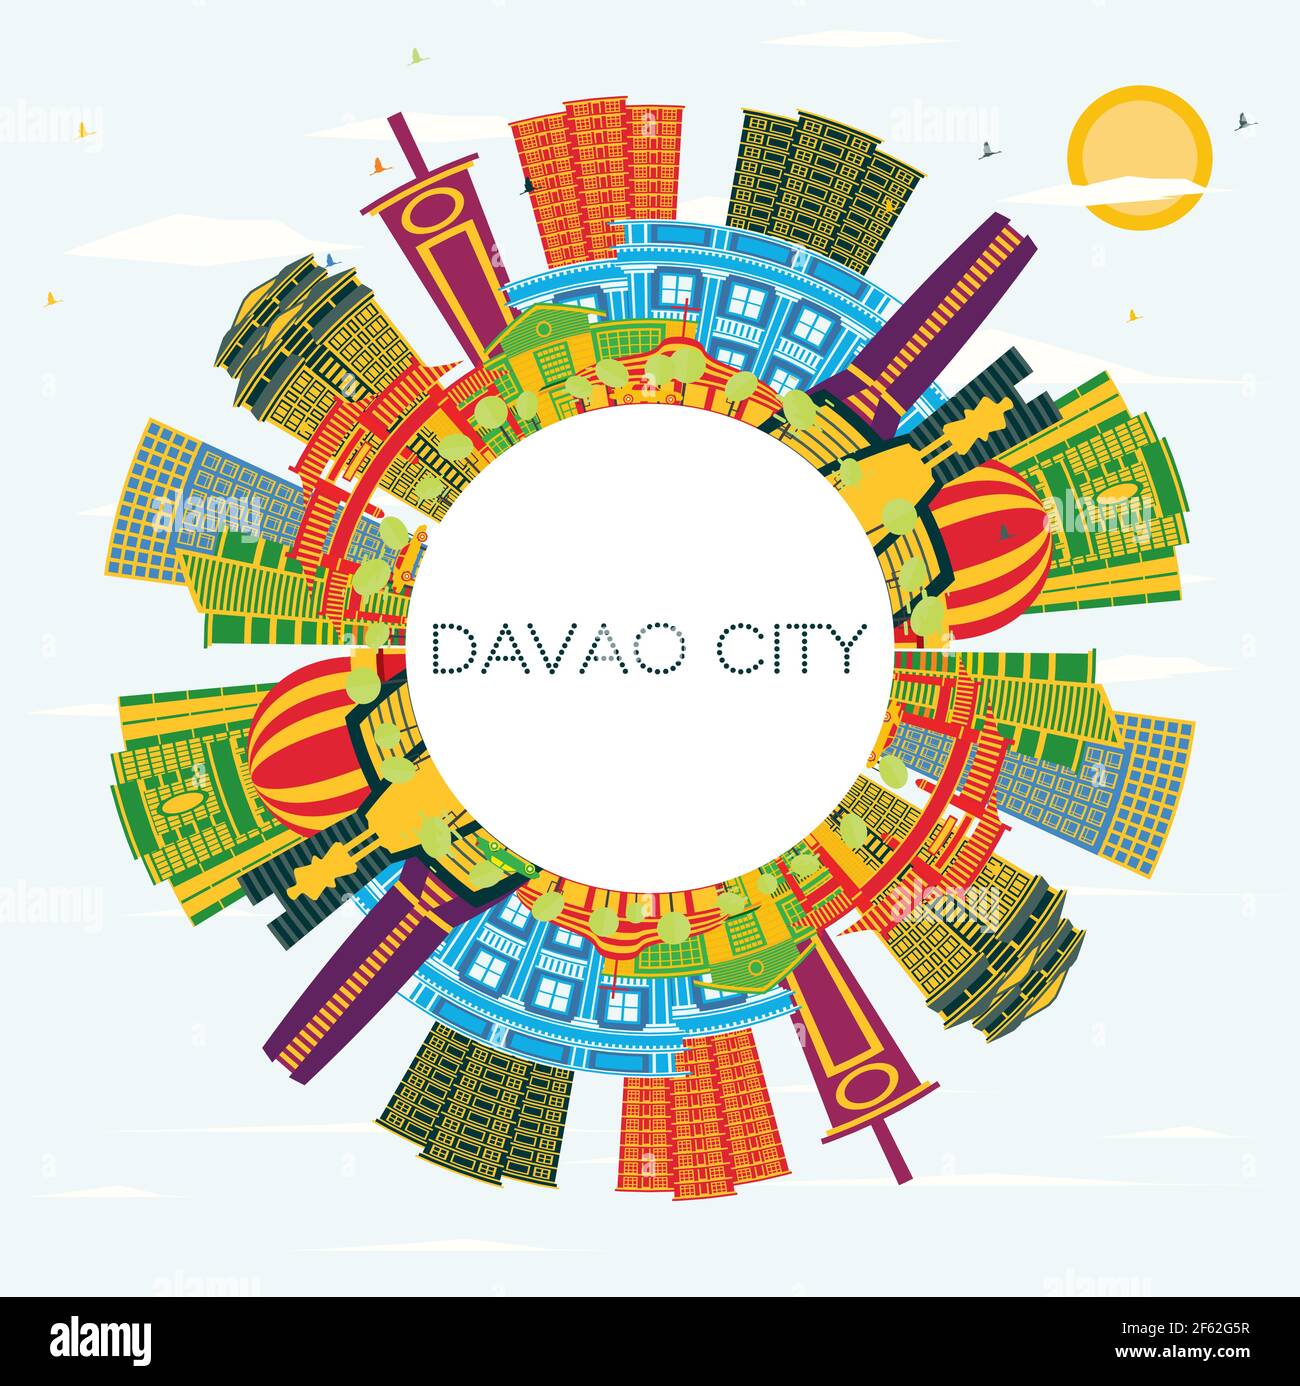 Davao City Philippines Skyline avec des bâtiments couleur, ciel bleu et espace de copie. Illustration vectorielle. Voyages d'affaires et tourisme Illustration. Illustration de Vecteur